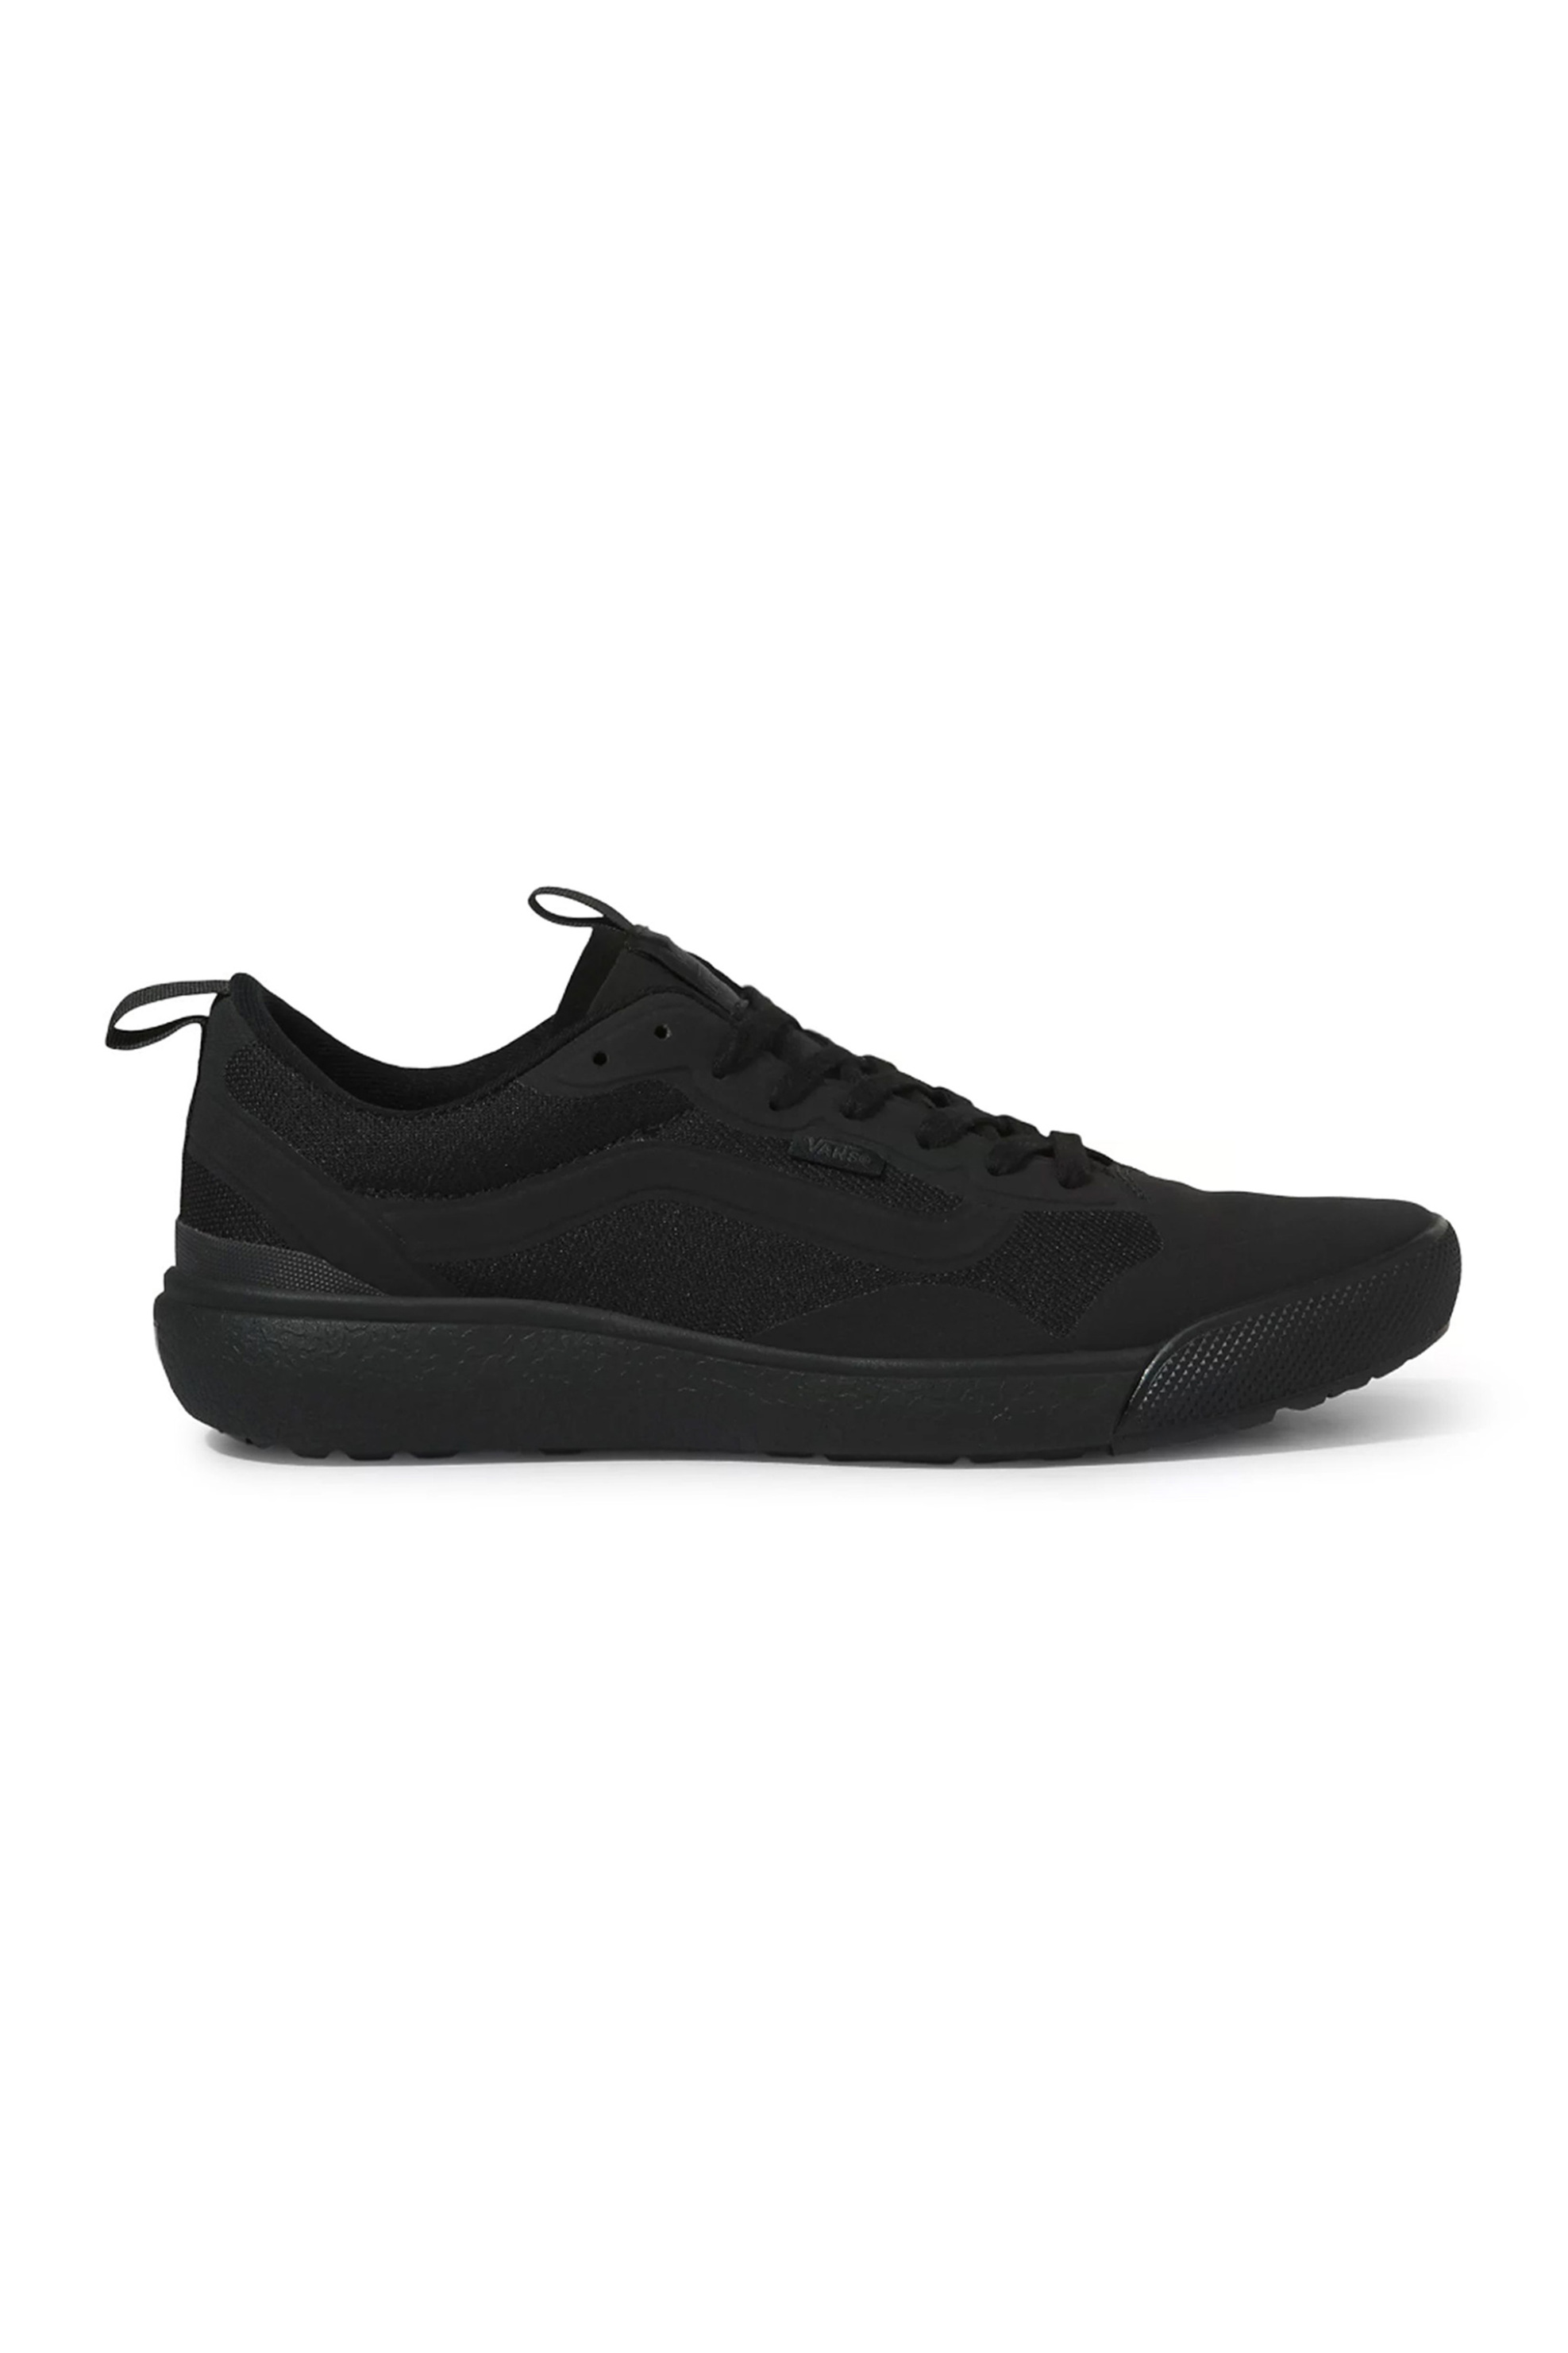 Ανδρική Μόδα > Ανδρικά Παπούτσια > Ανδρικά Sneakers Vans unisex sneakers "Ultrarange Exo" - VN0A4U1KBJ41 Μαύρο